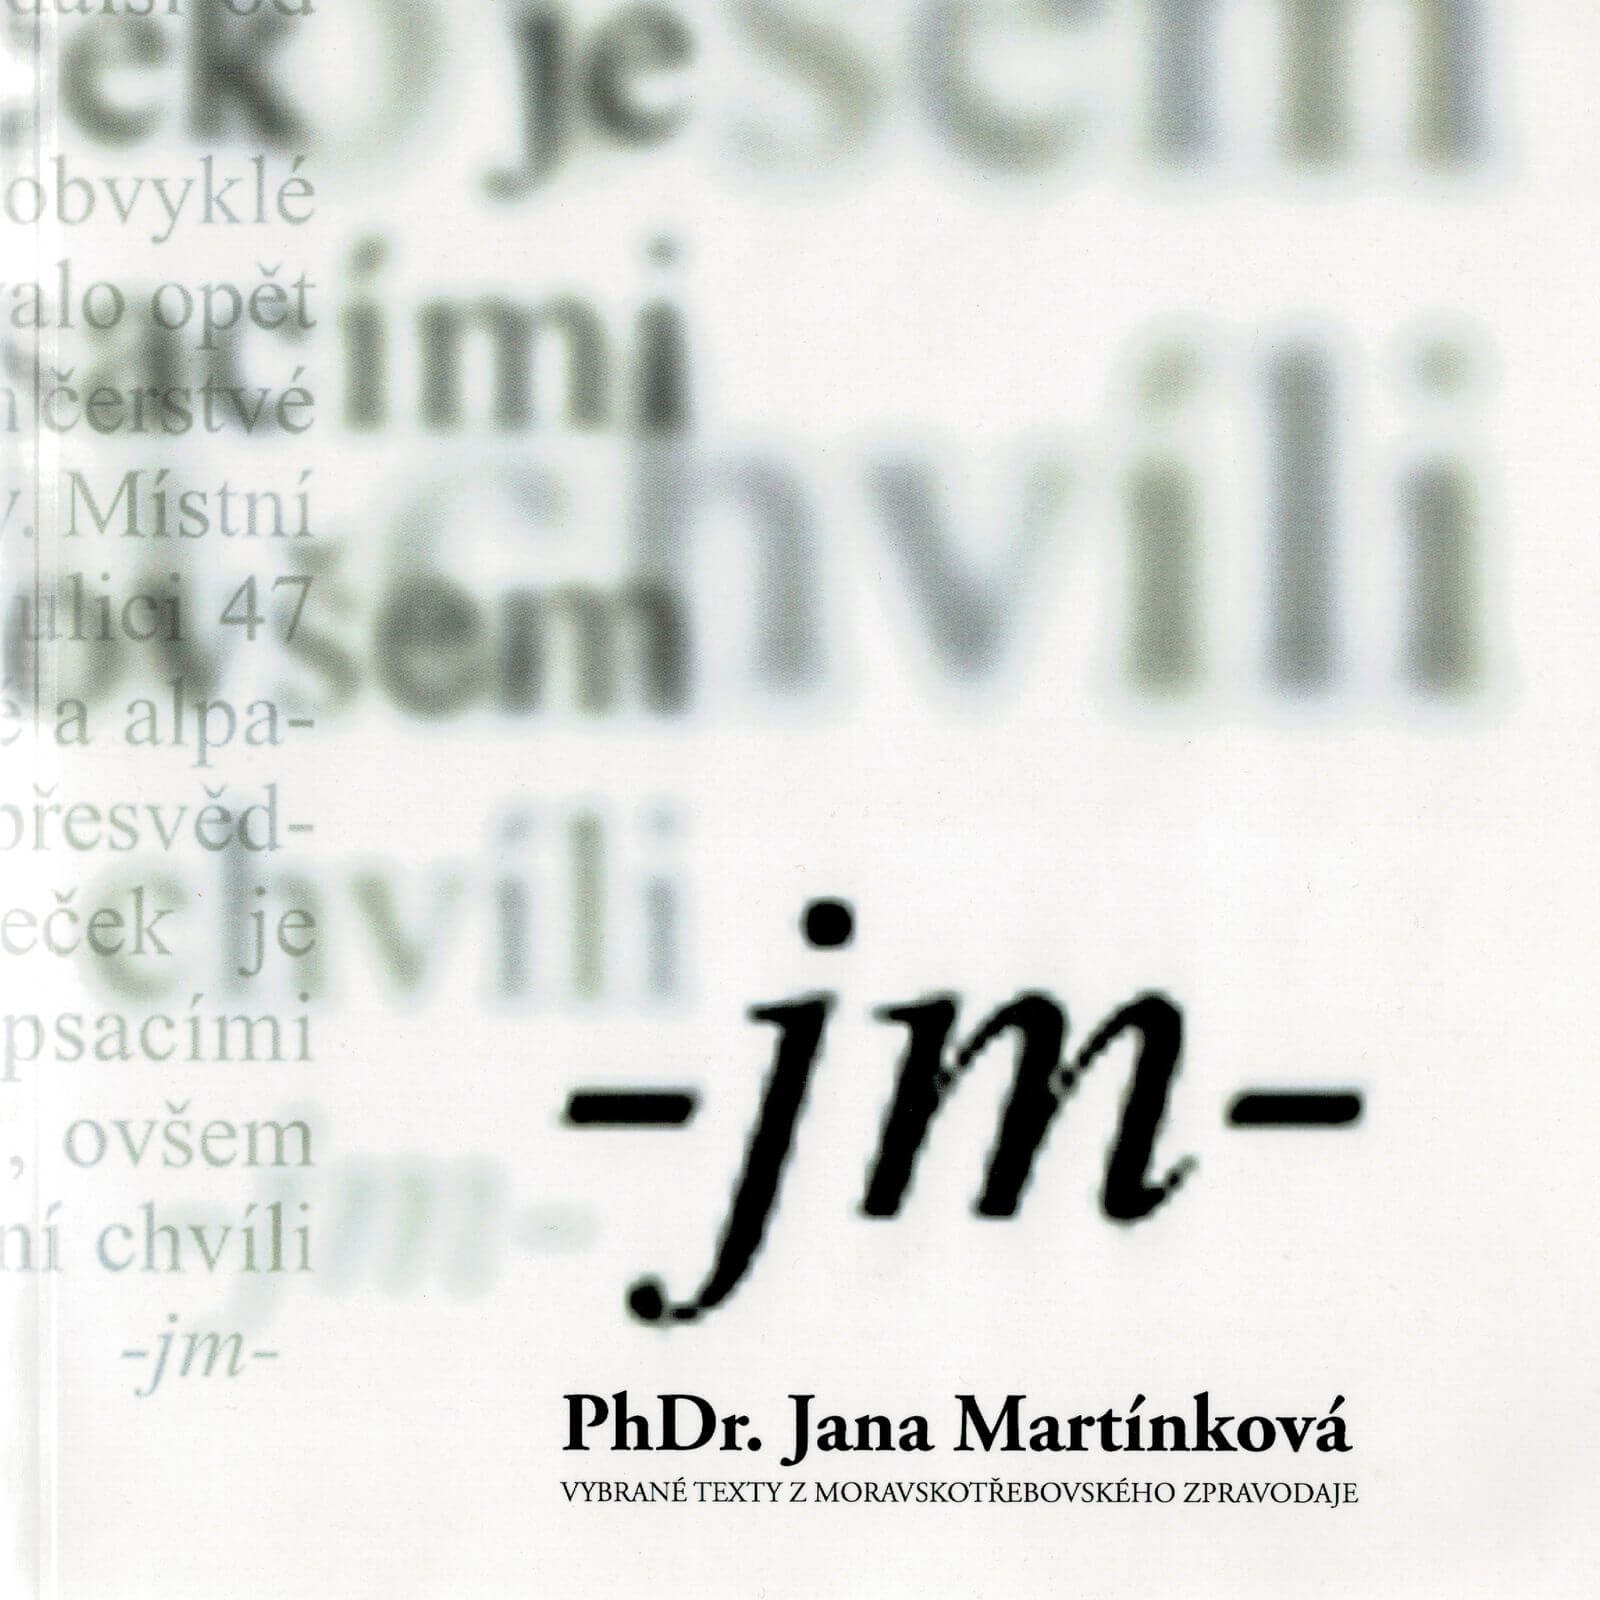 PhDr. Jana Martínková